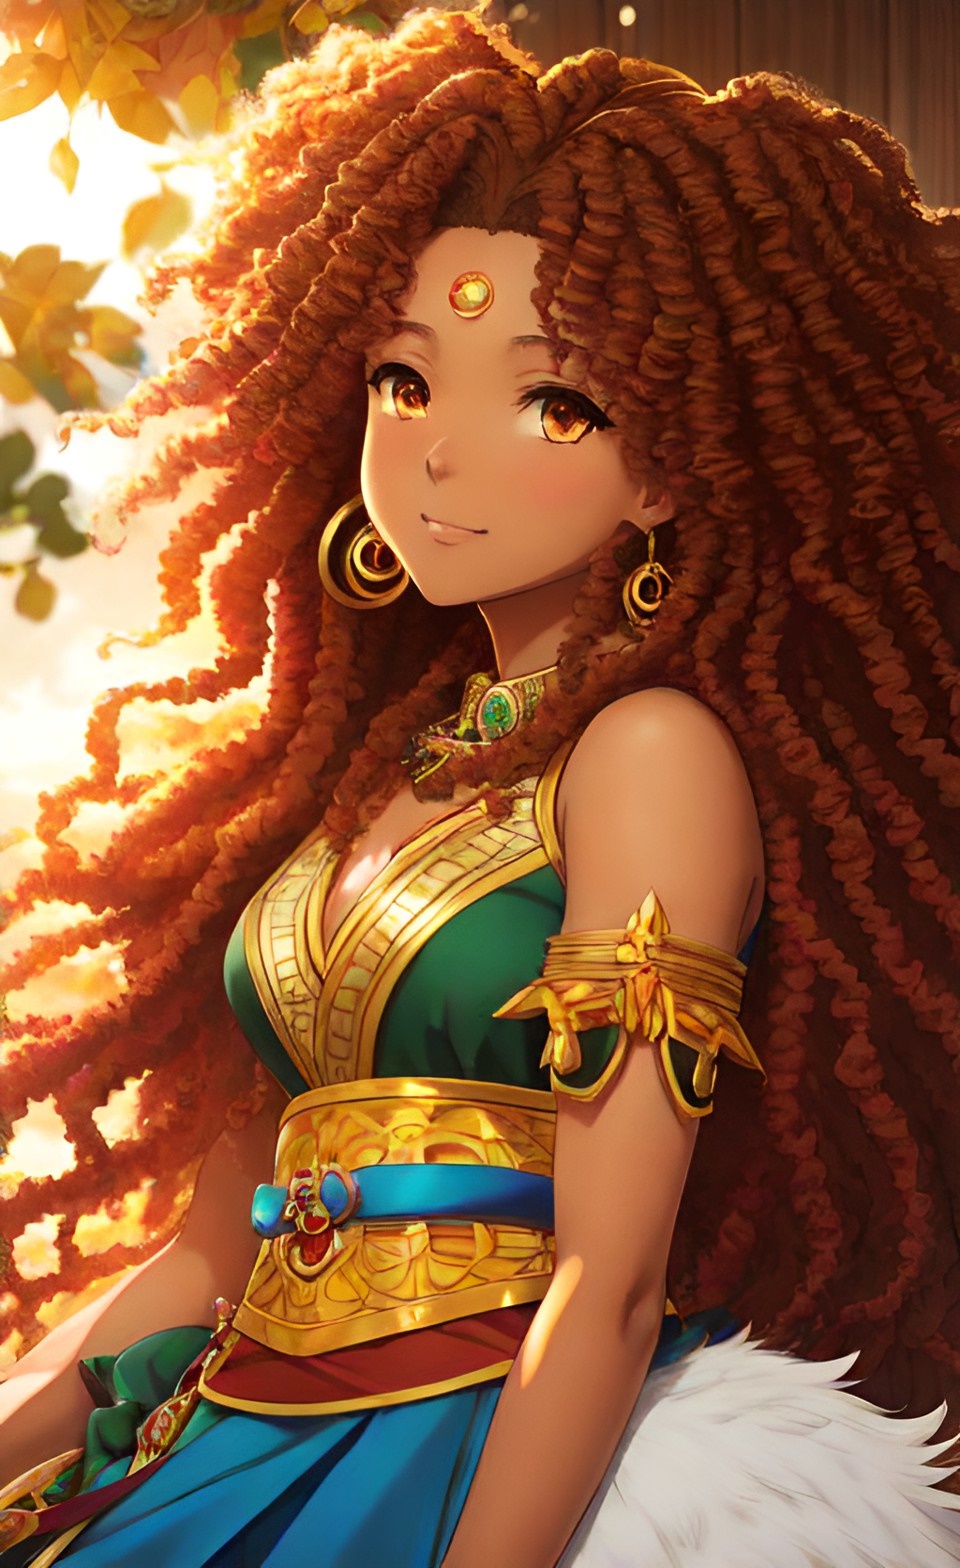 Mixed-race Queen of SHEBA art work Mixed417